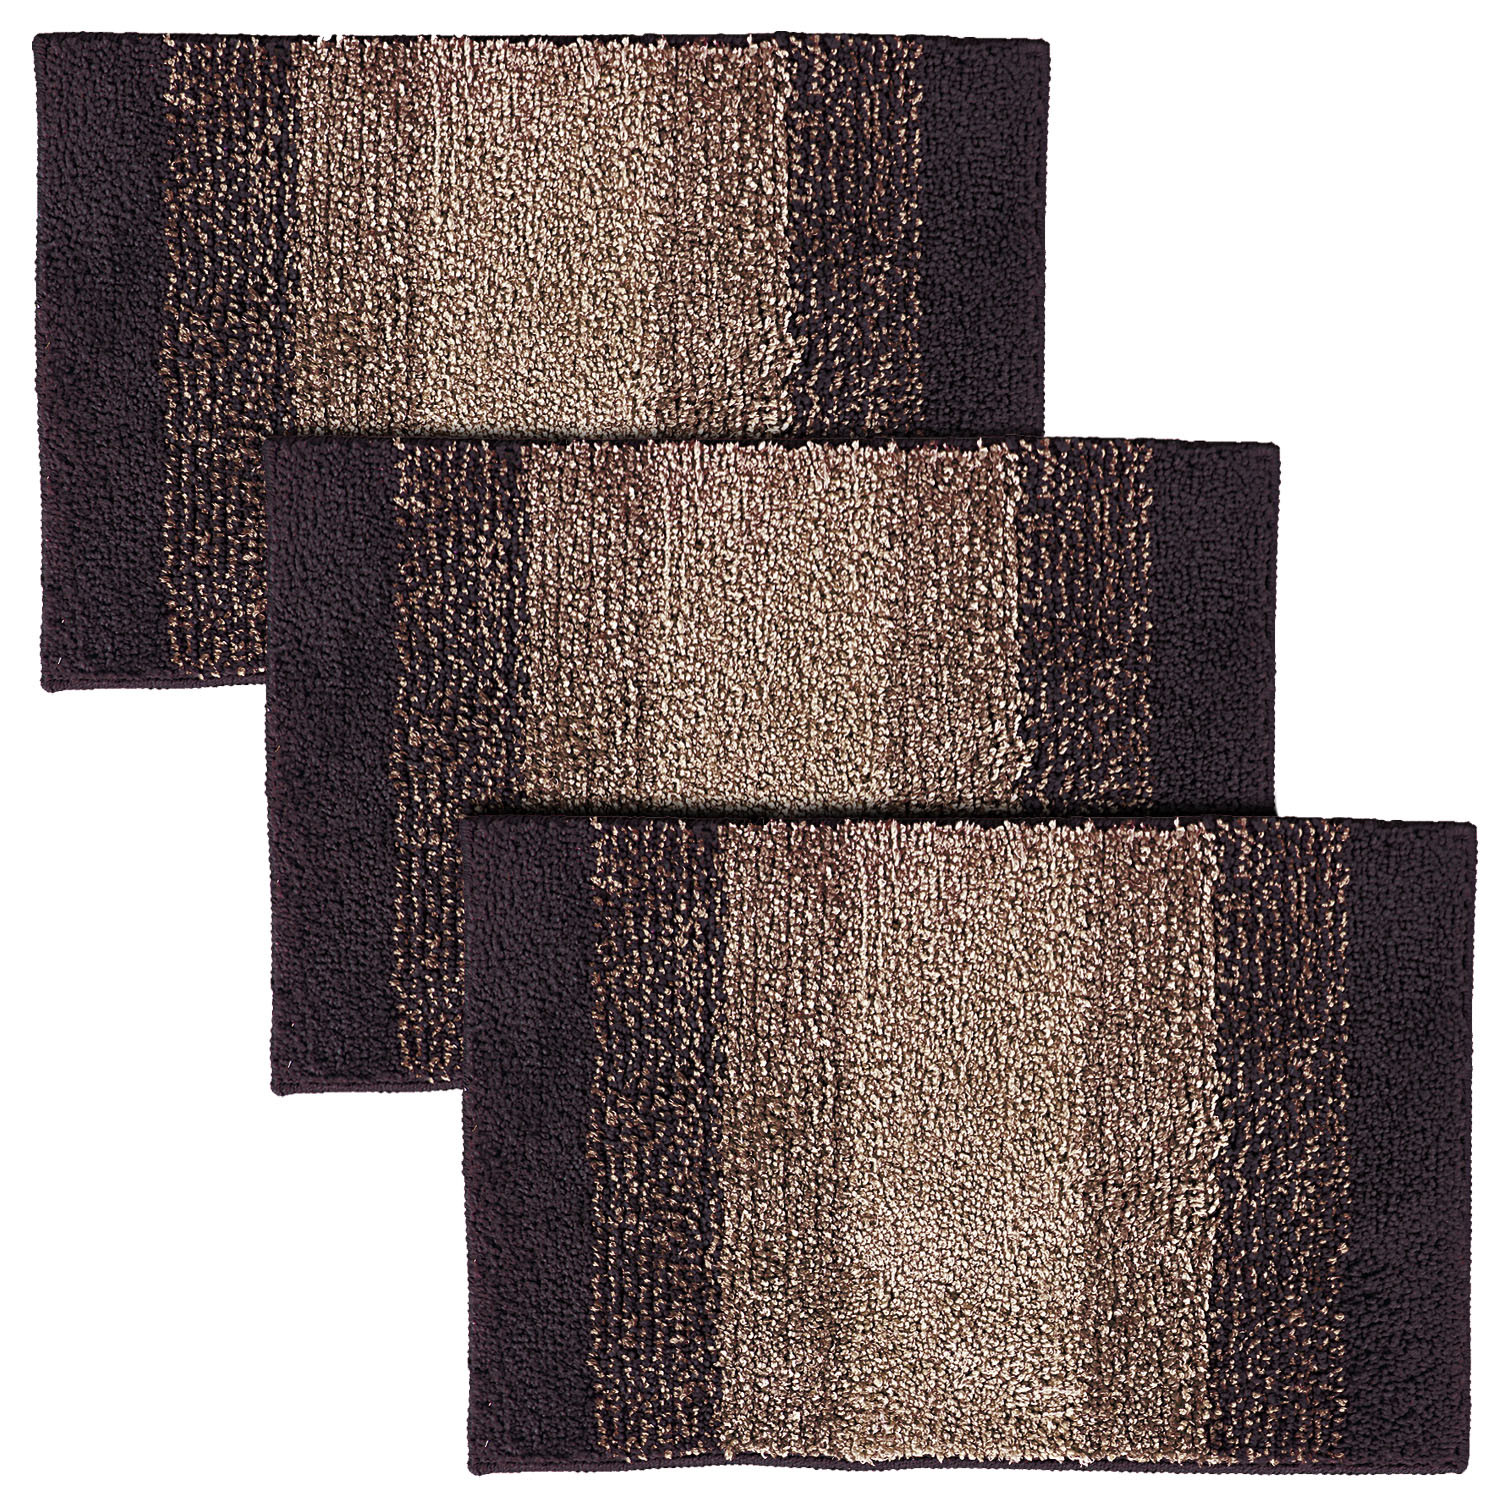 Kuber Industries Soft Shaggy Door Mat|Super Absorbent Cotton Floor Mat For Shoe Scraper & Indoor And Outdoor (Brown)